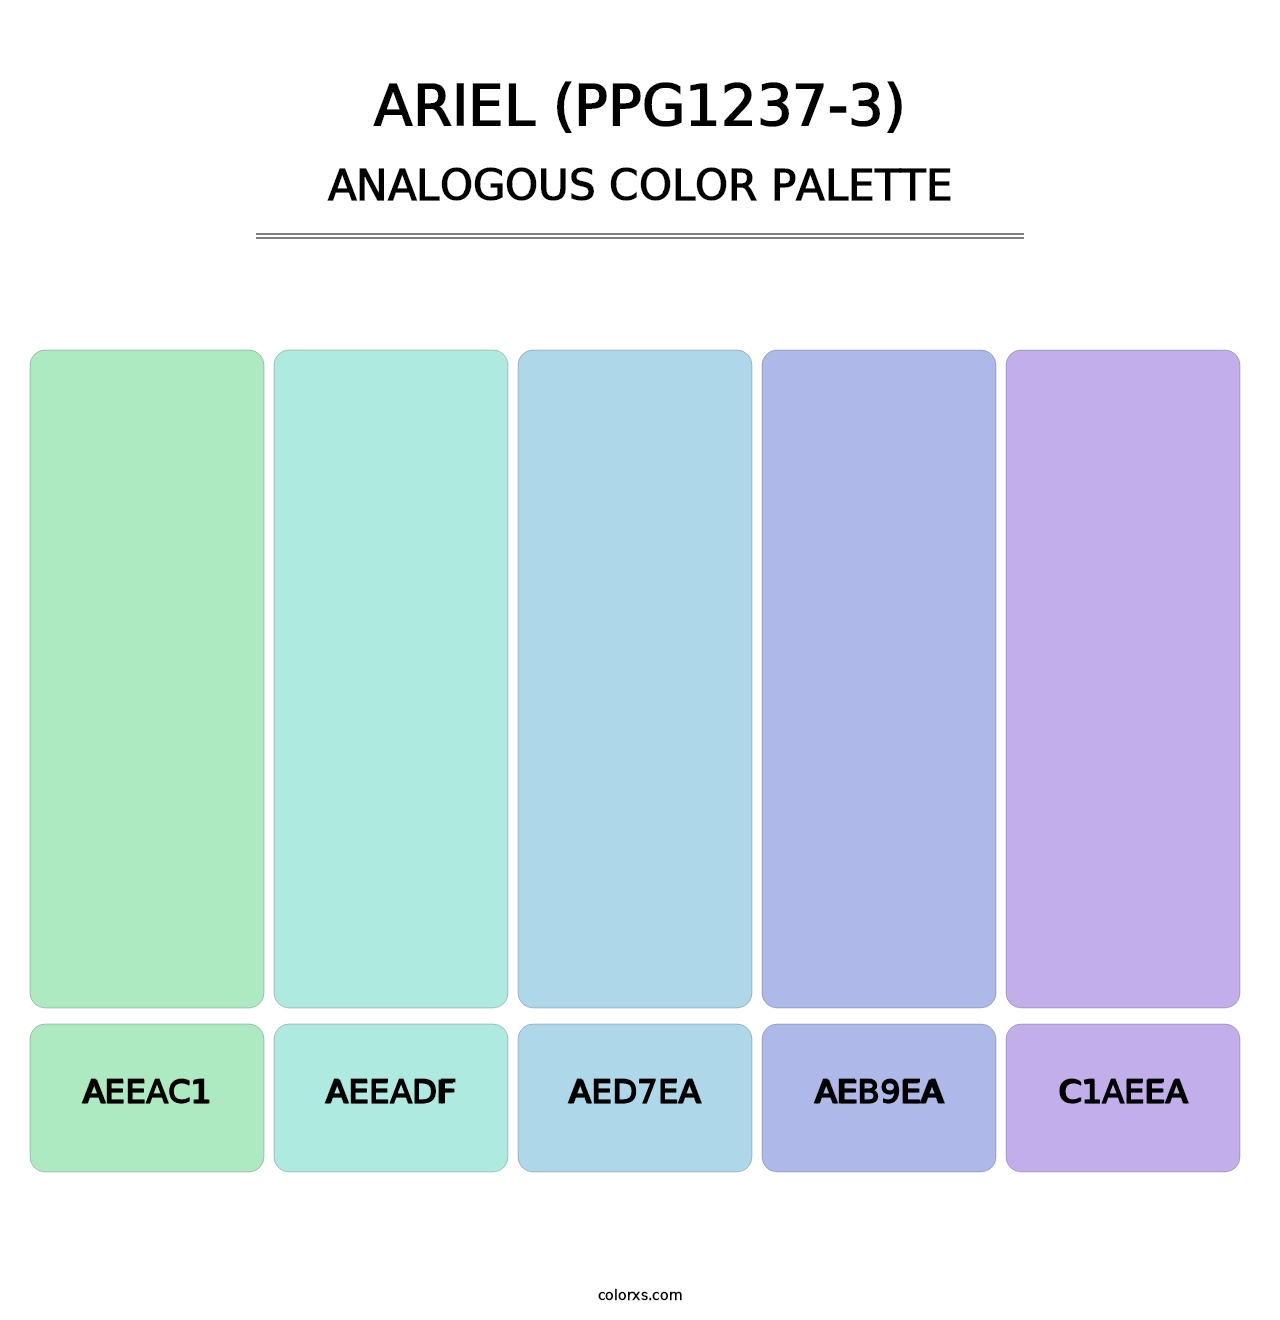 Ariel (PPG1237-3) - Analogous Color Palette